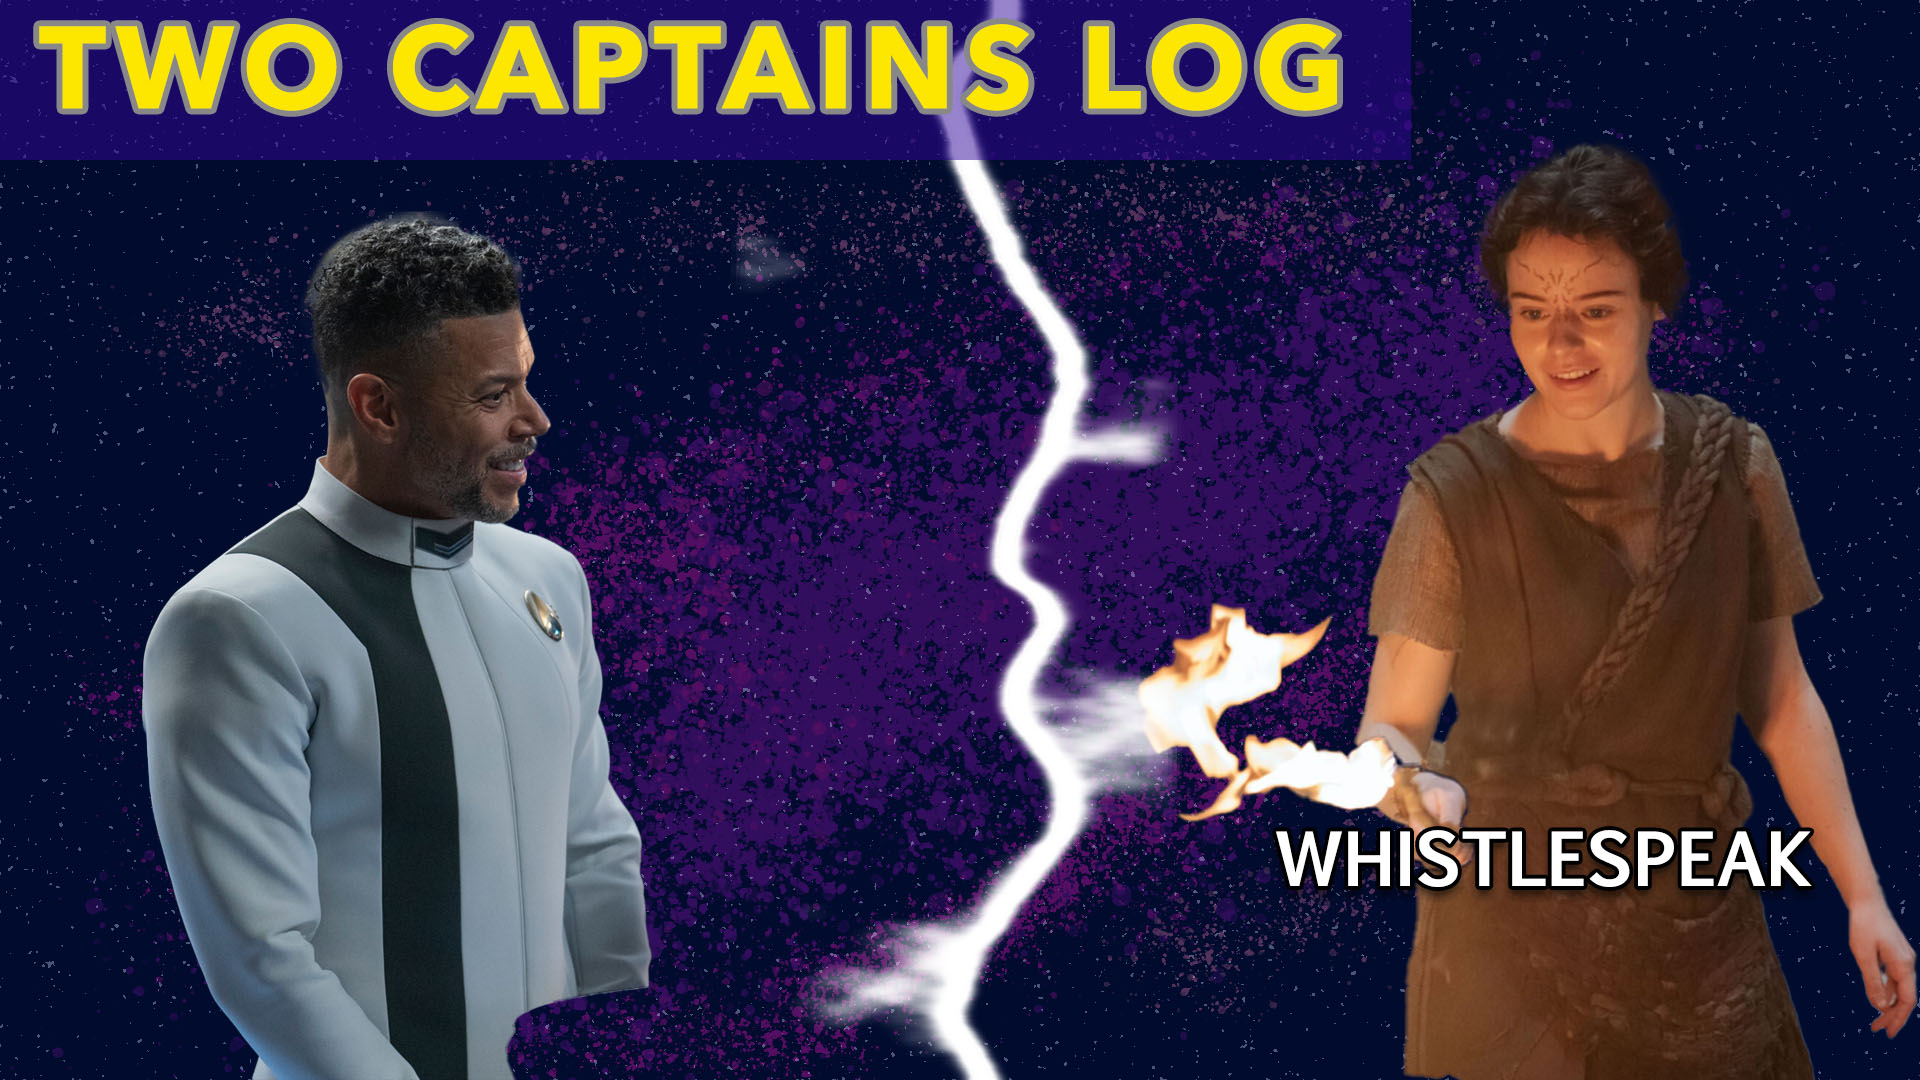 Two Captains Log: Star Trek: Discovery S5E6 – “Whistlespeak” Review